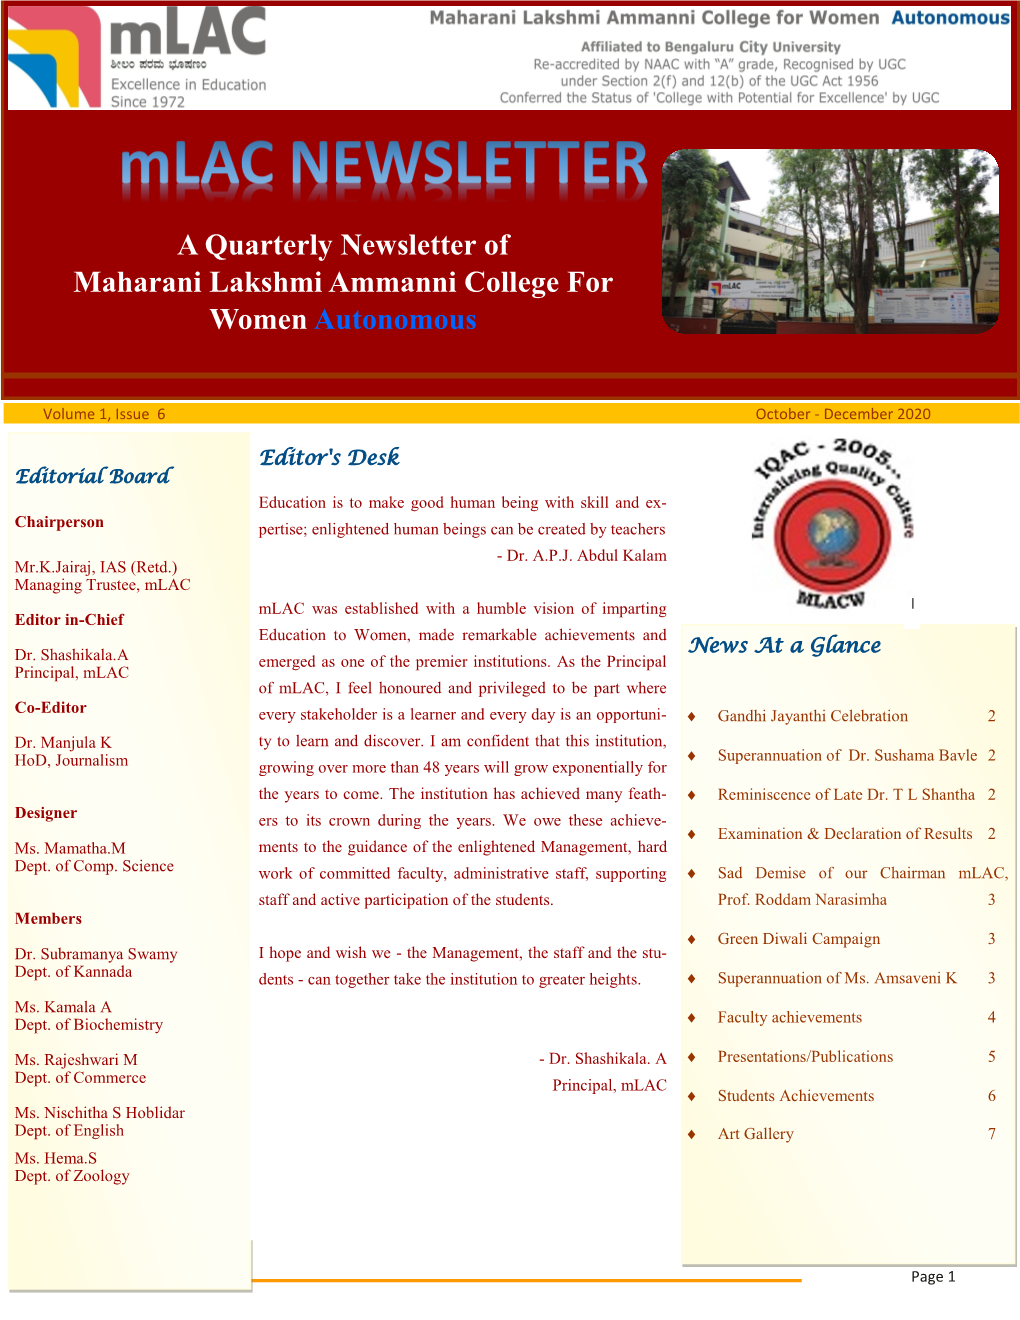 Mlac-Newsletter-Issue6.Pdf